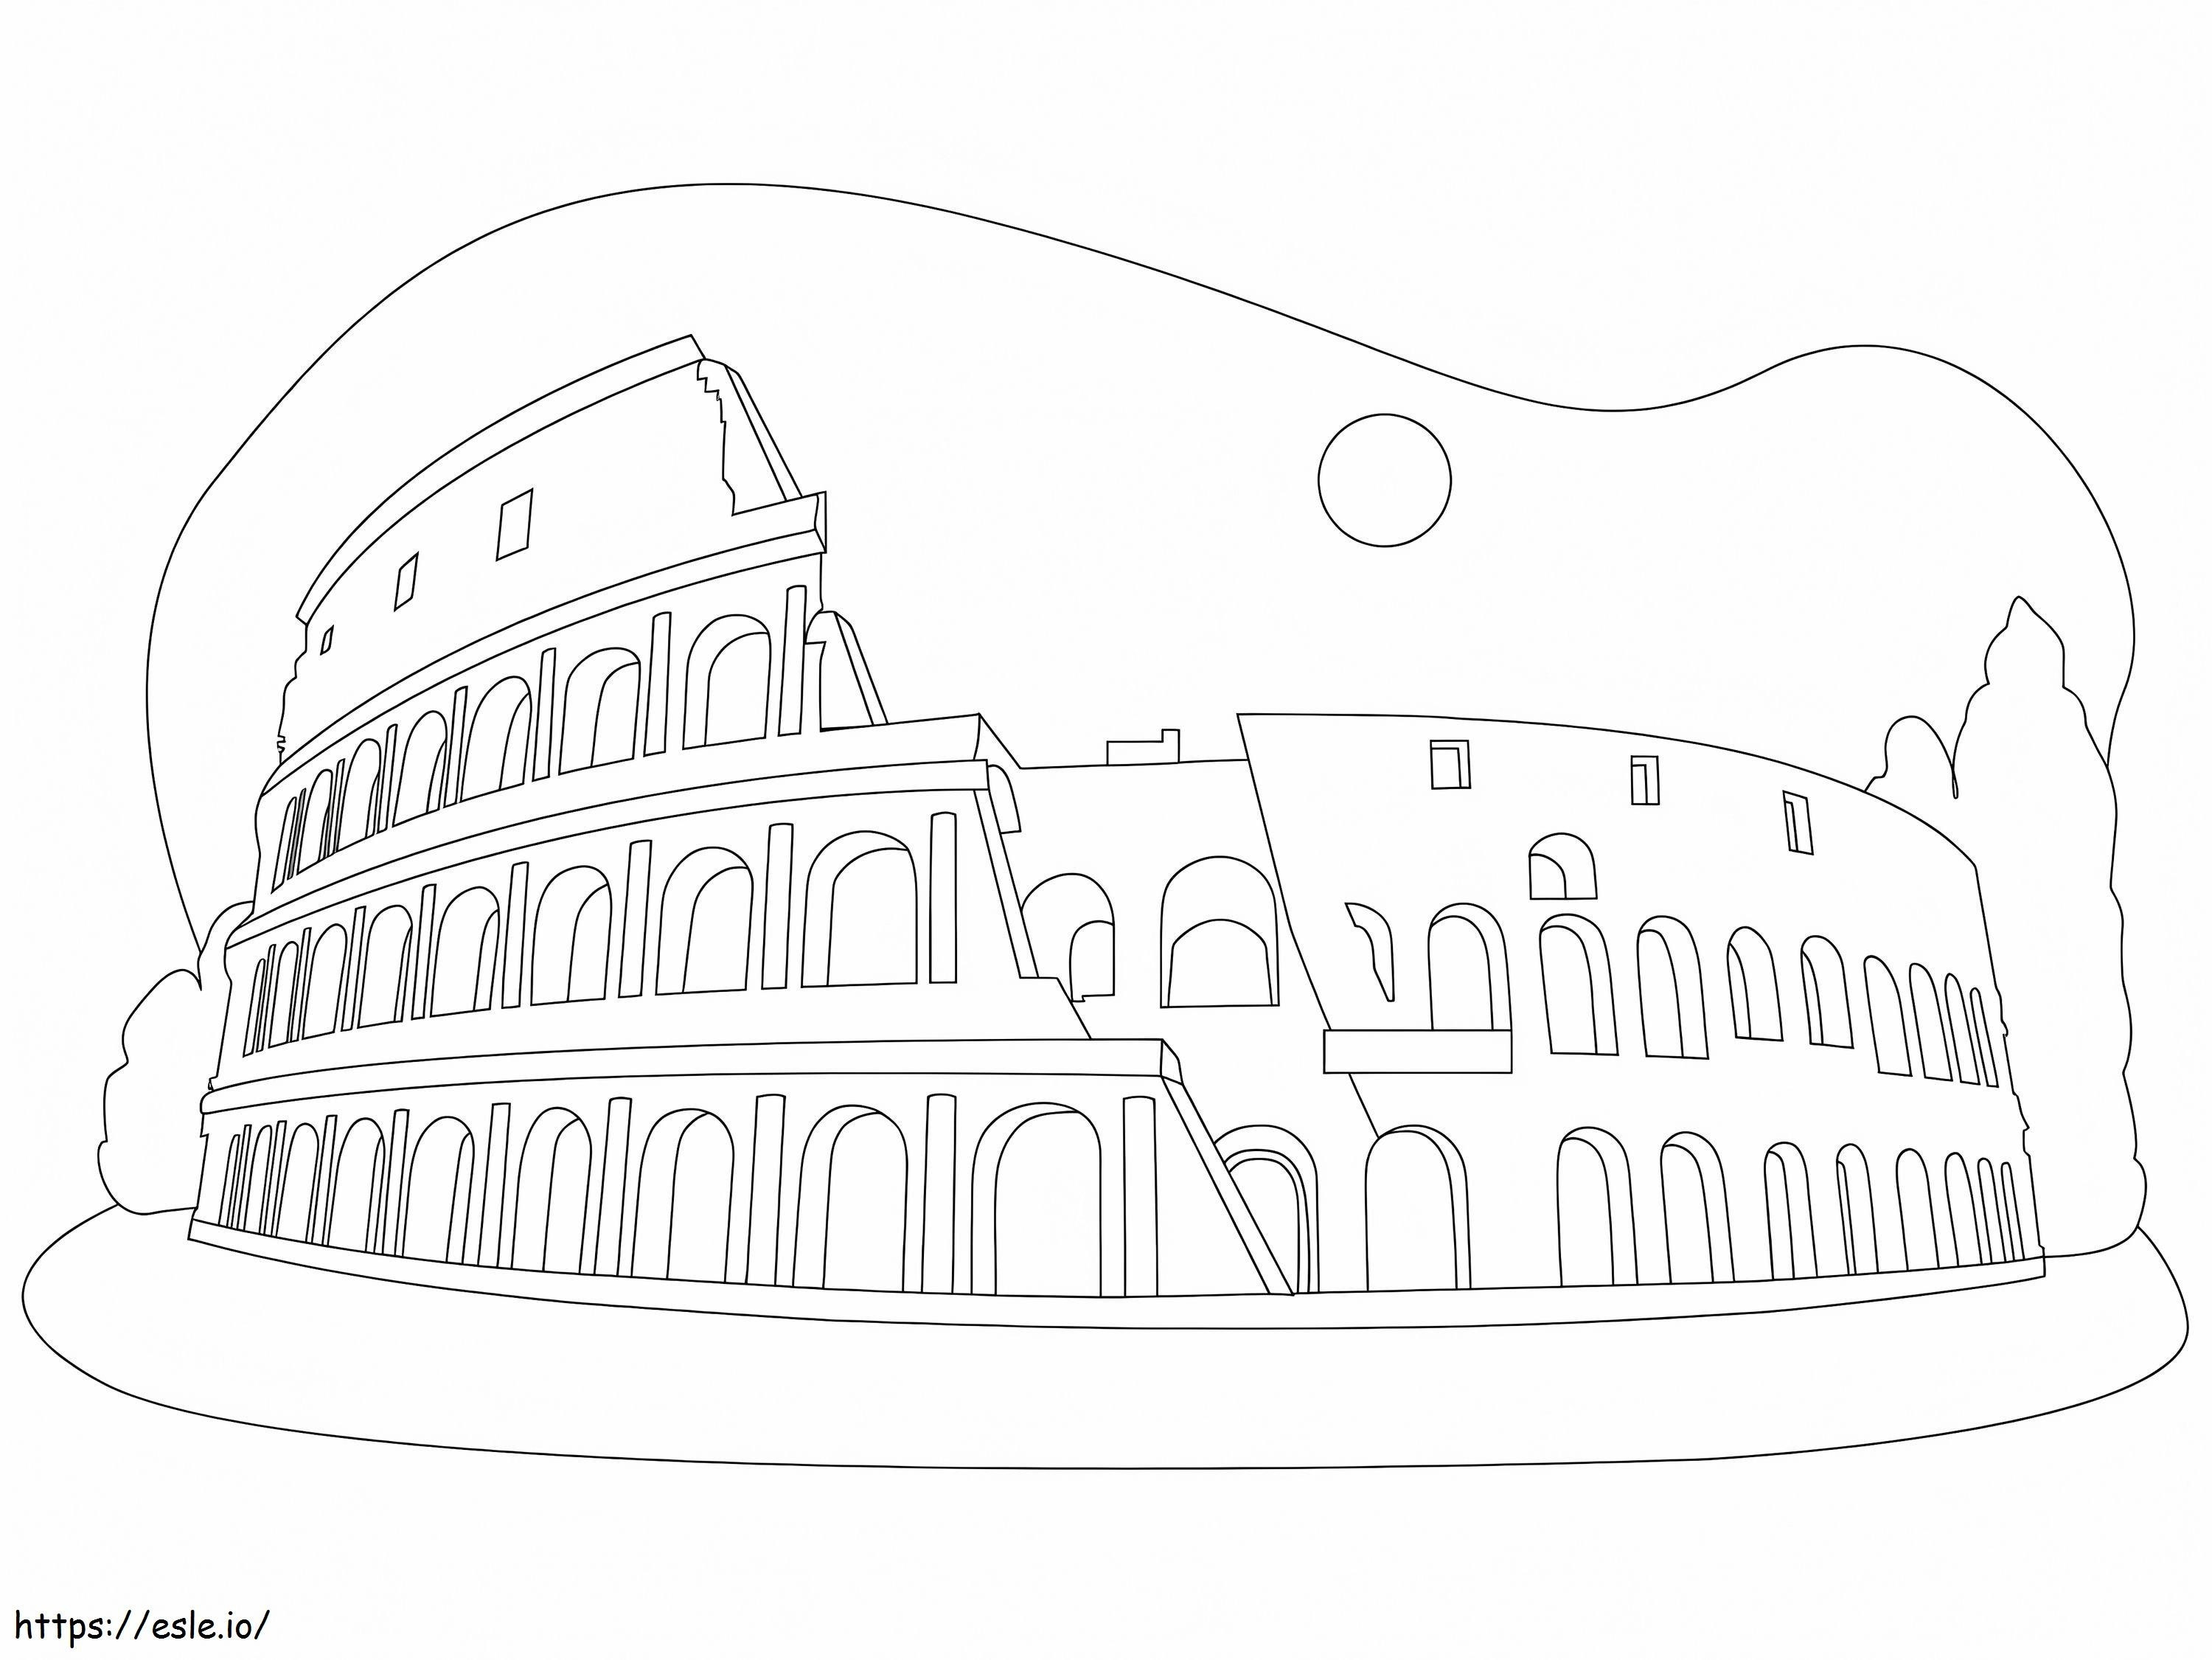 Il Colosseo da colorare